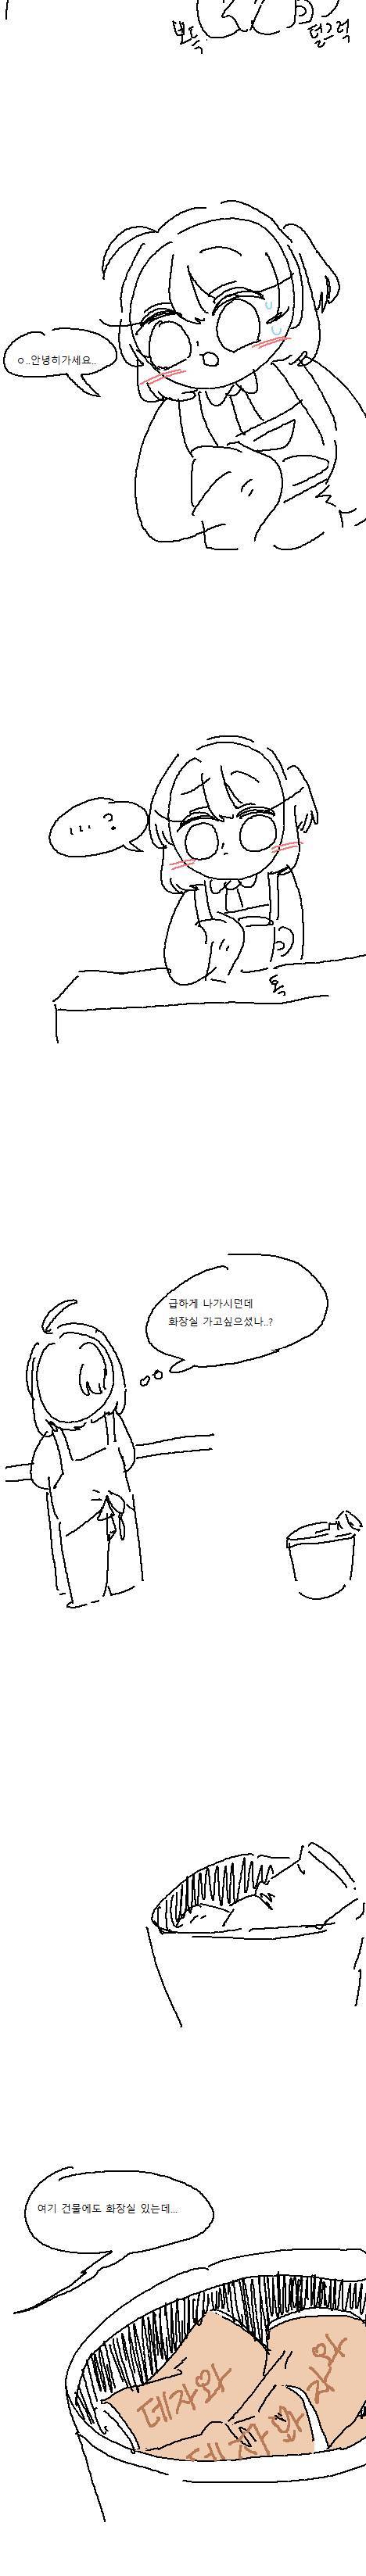 이상한 ‘밀크’티를 판매하는 카페 만화.manhwa